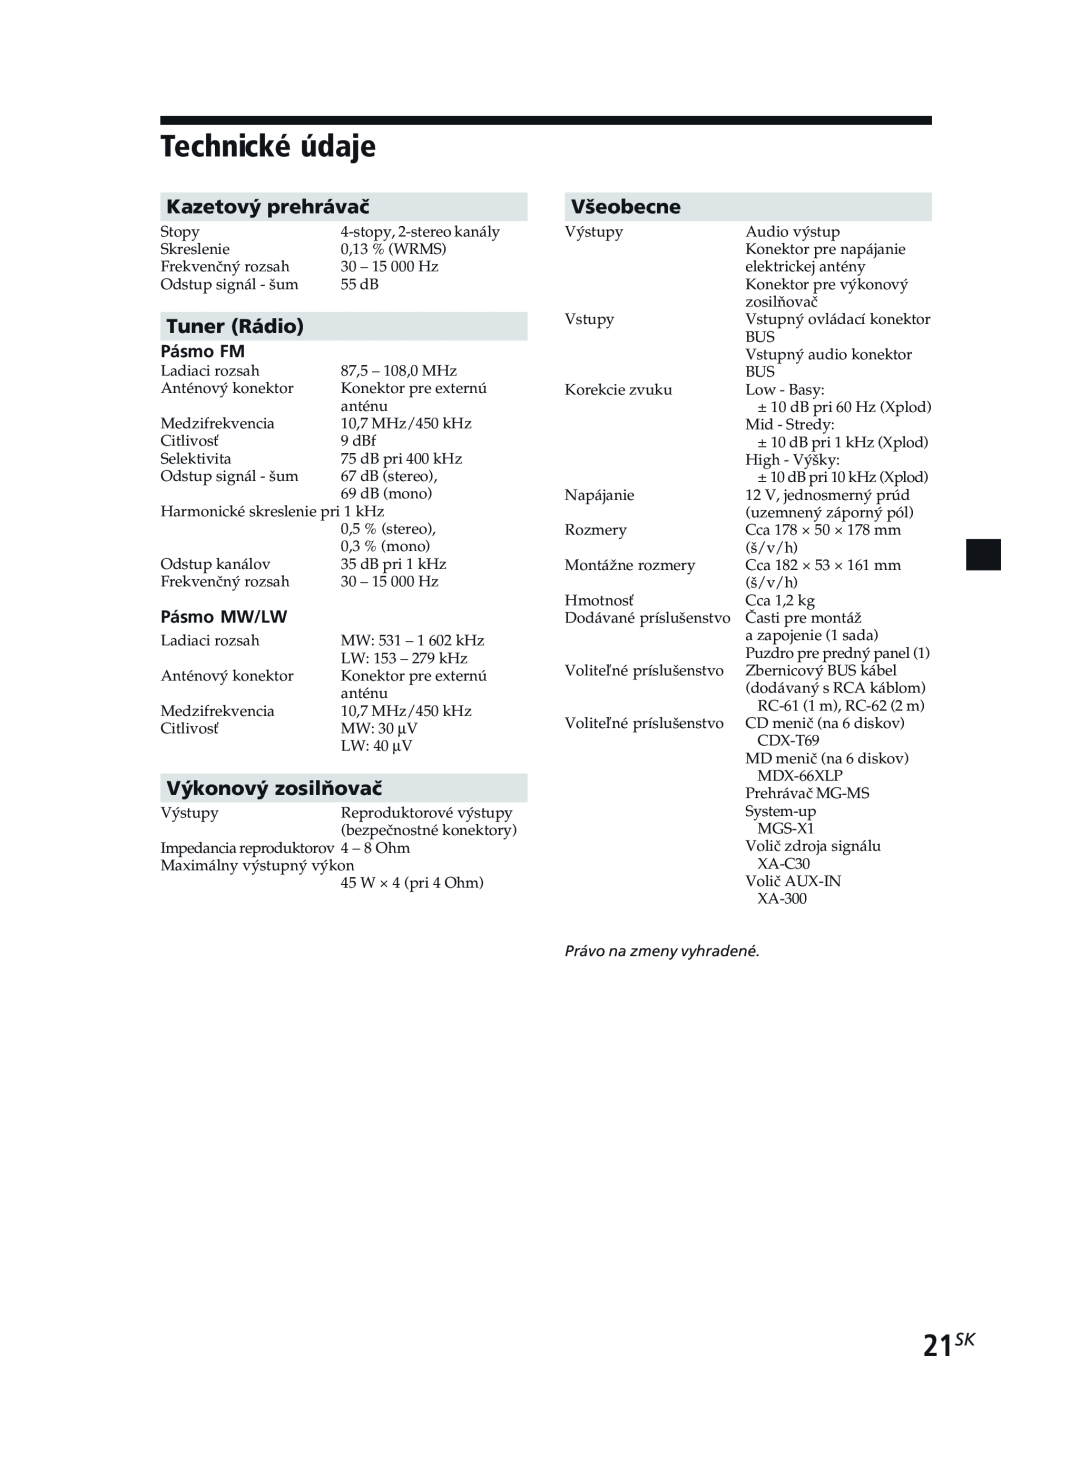 Sony XR-CA370X manual Technické údaje, 21SK, Kazetový prehrávač, Tuner Rádio, Výkonový zosilňovač, Všeobecne 